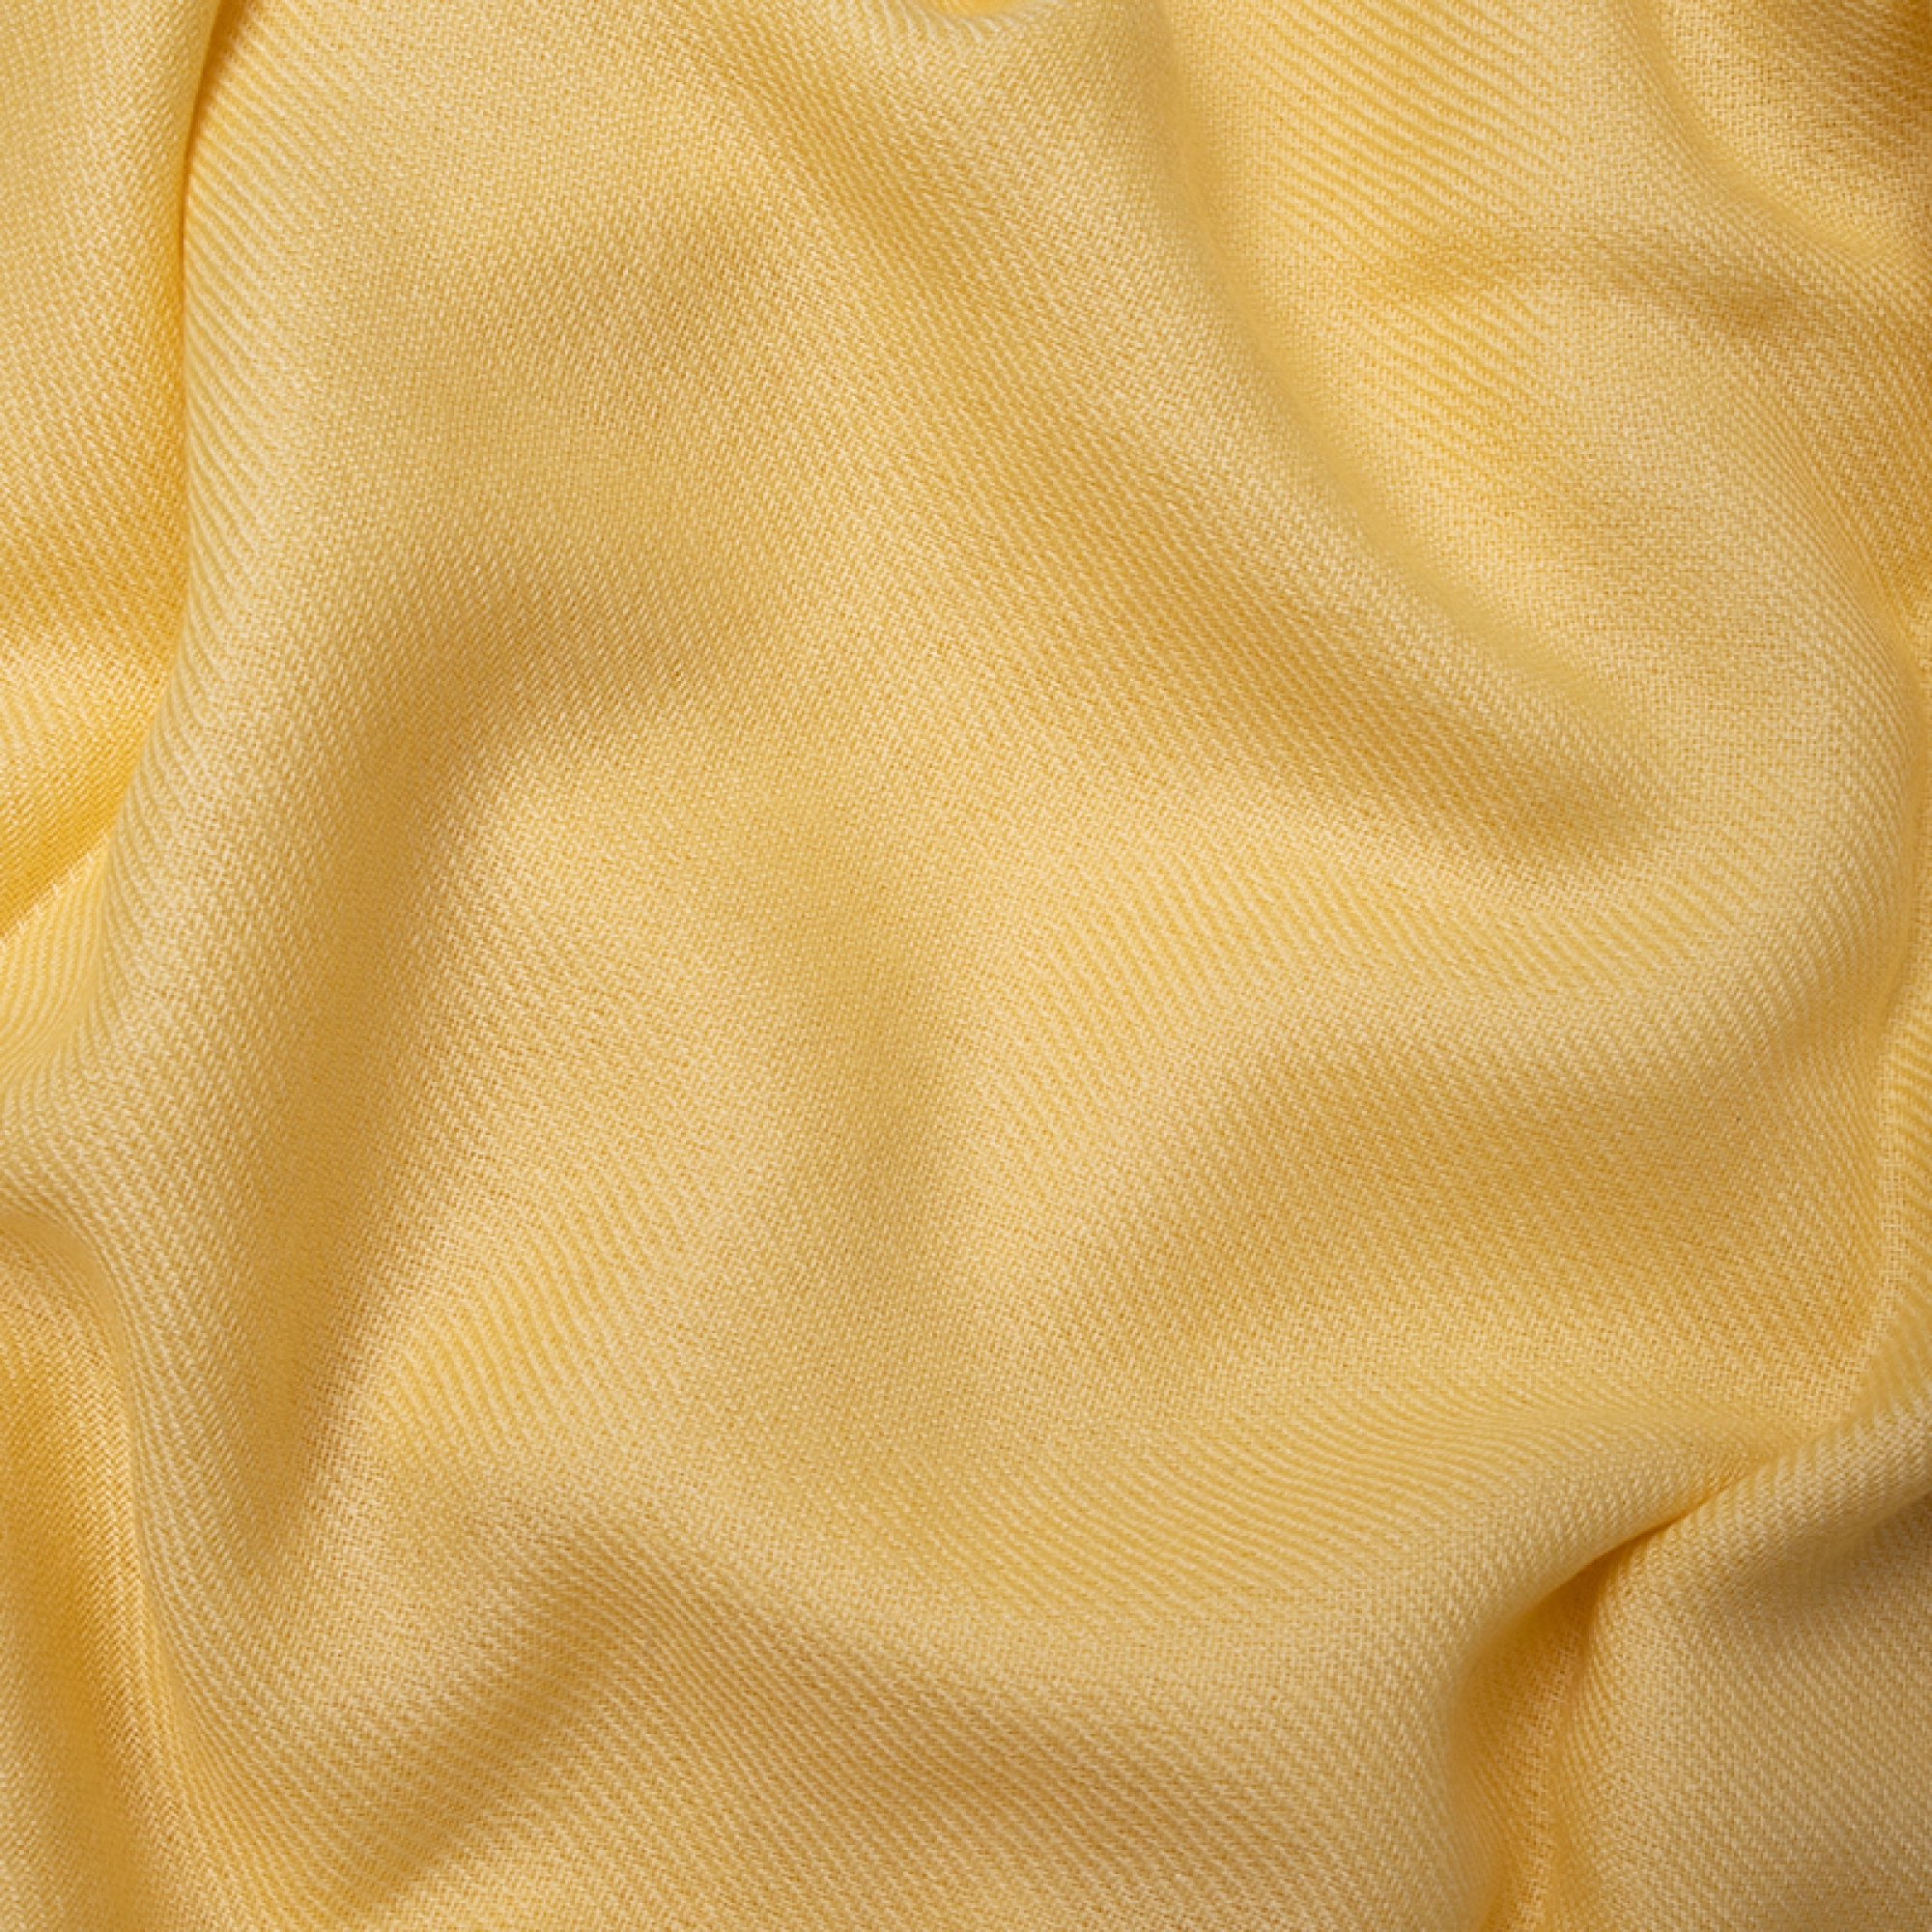 Cachemire pull femme etoles chales niry jaune pastel 200x90cm